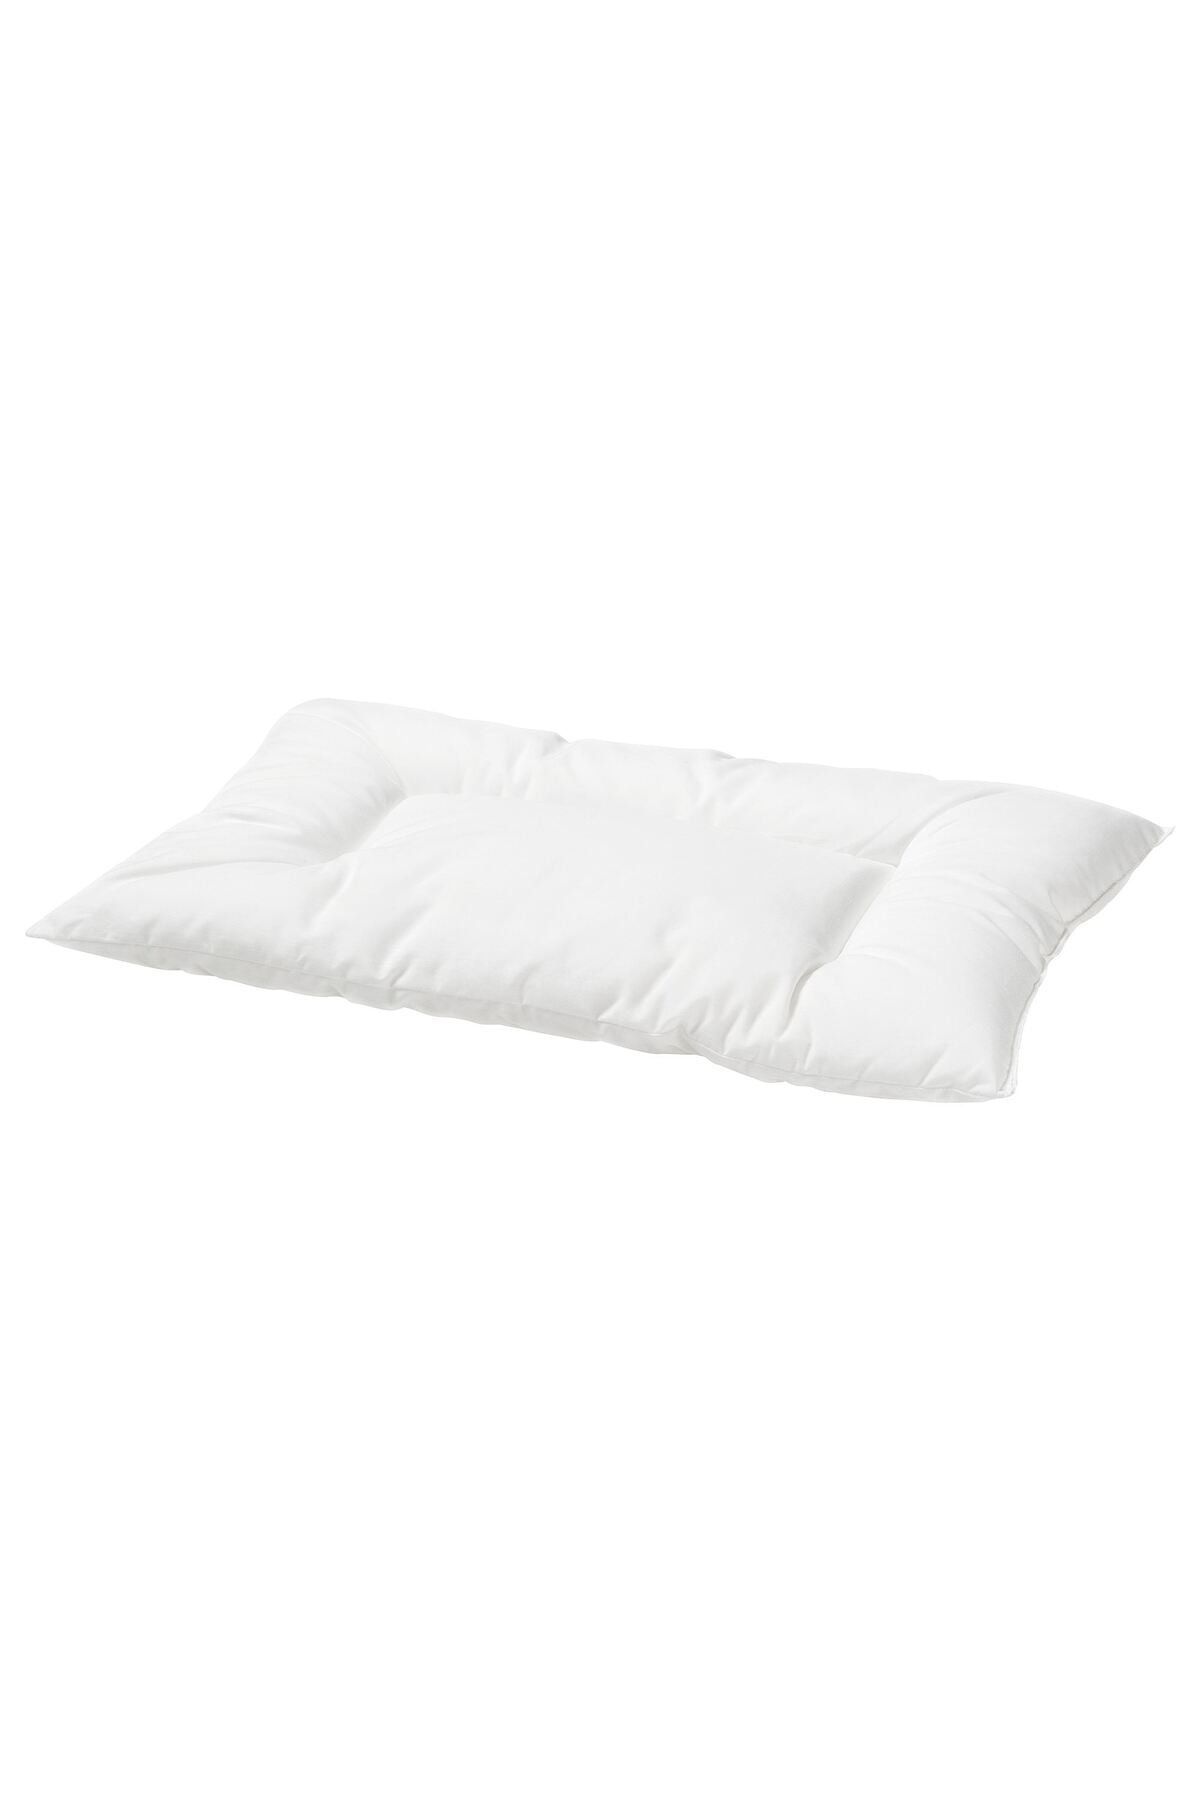 IKEA Bebek Yastığı beyaz 35x55cm Kentsoylu 00028508